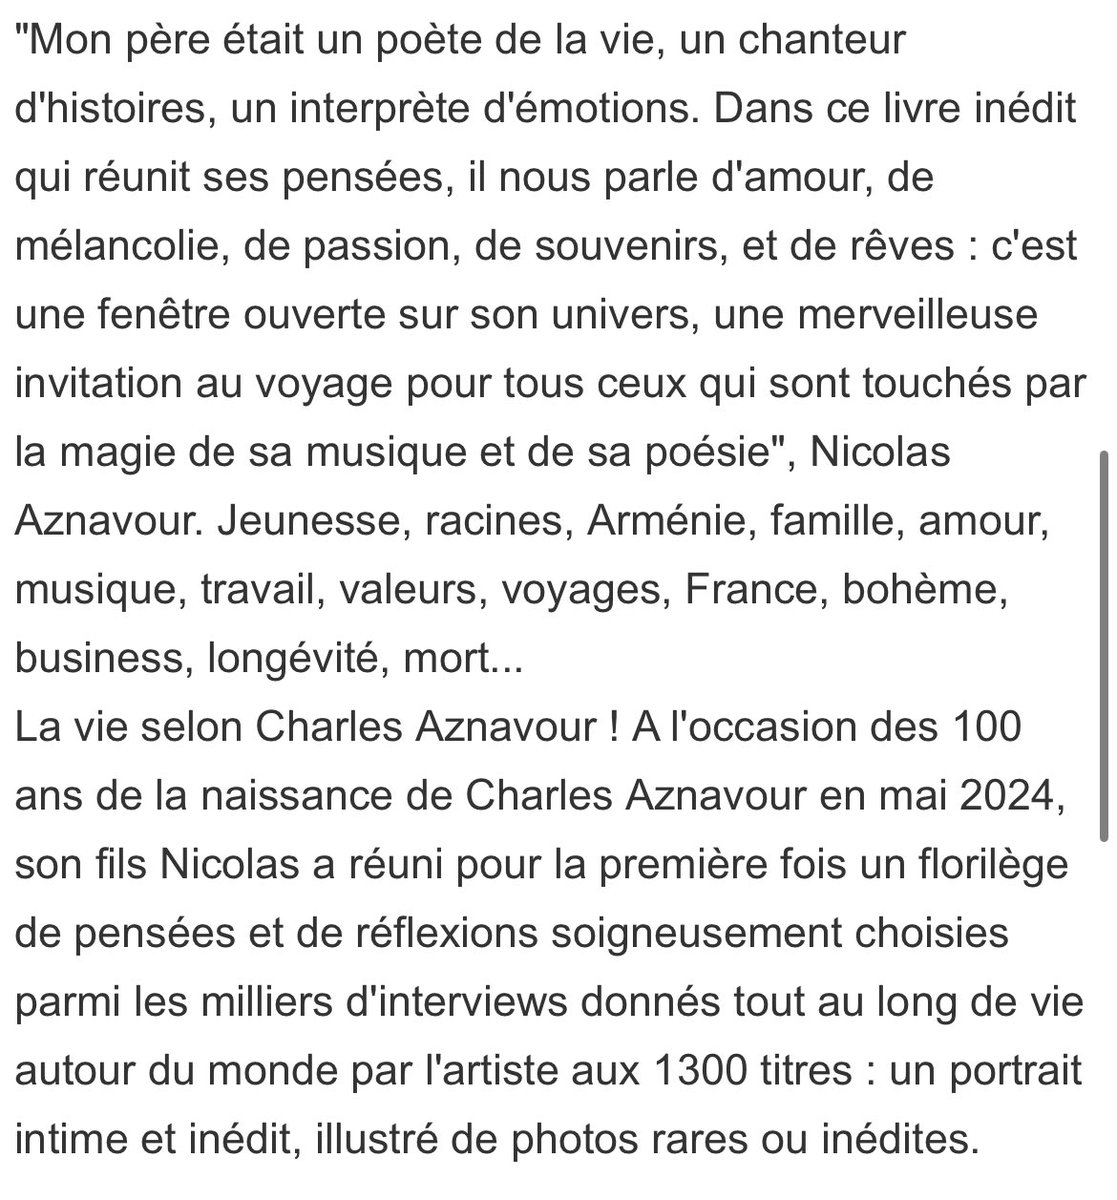 À paraître le 15 mai chez @AlbinMichel 

Aznavour inédit. La vie selon Charles - Nicolas Aznavour